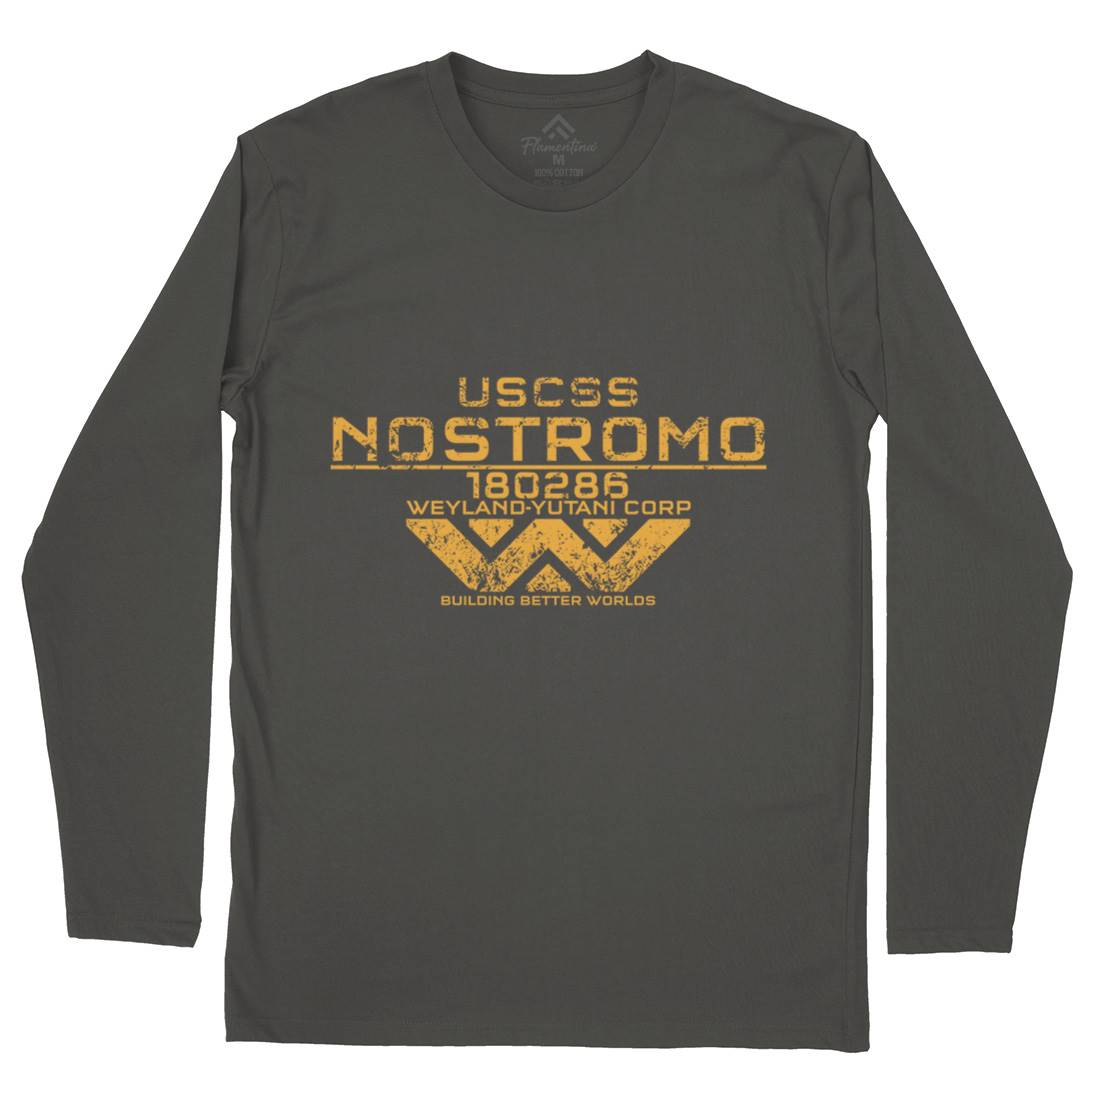 Uscss Nostromo Mens Long Sleeve T-Shirt Space D140